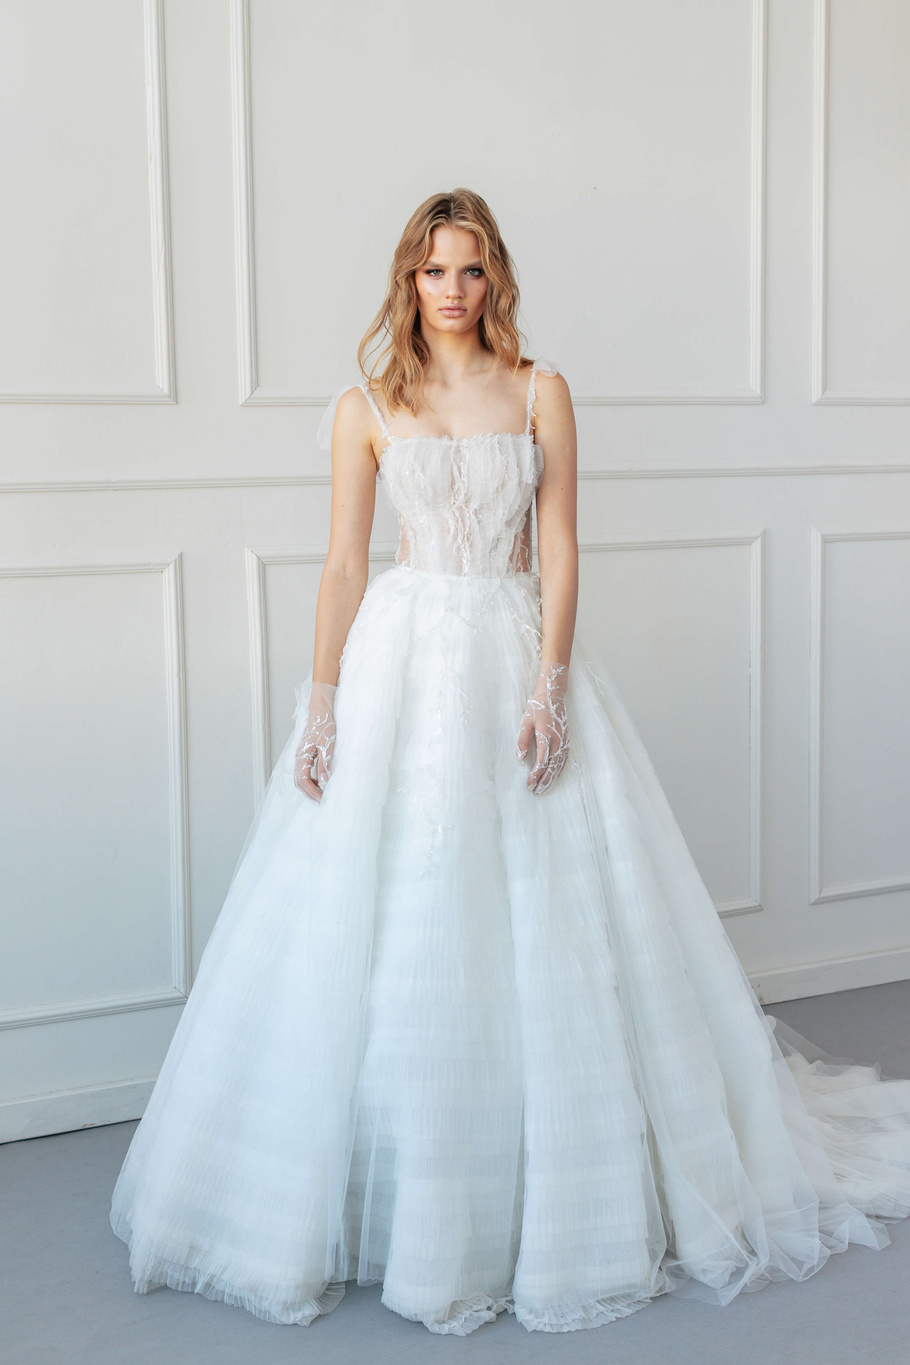 Купить свадебное платье «Мелани» Анже Этуаль из коллекции 2020 года в салоне «Мэри Трюфель»